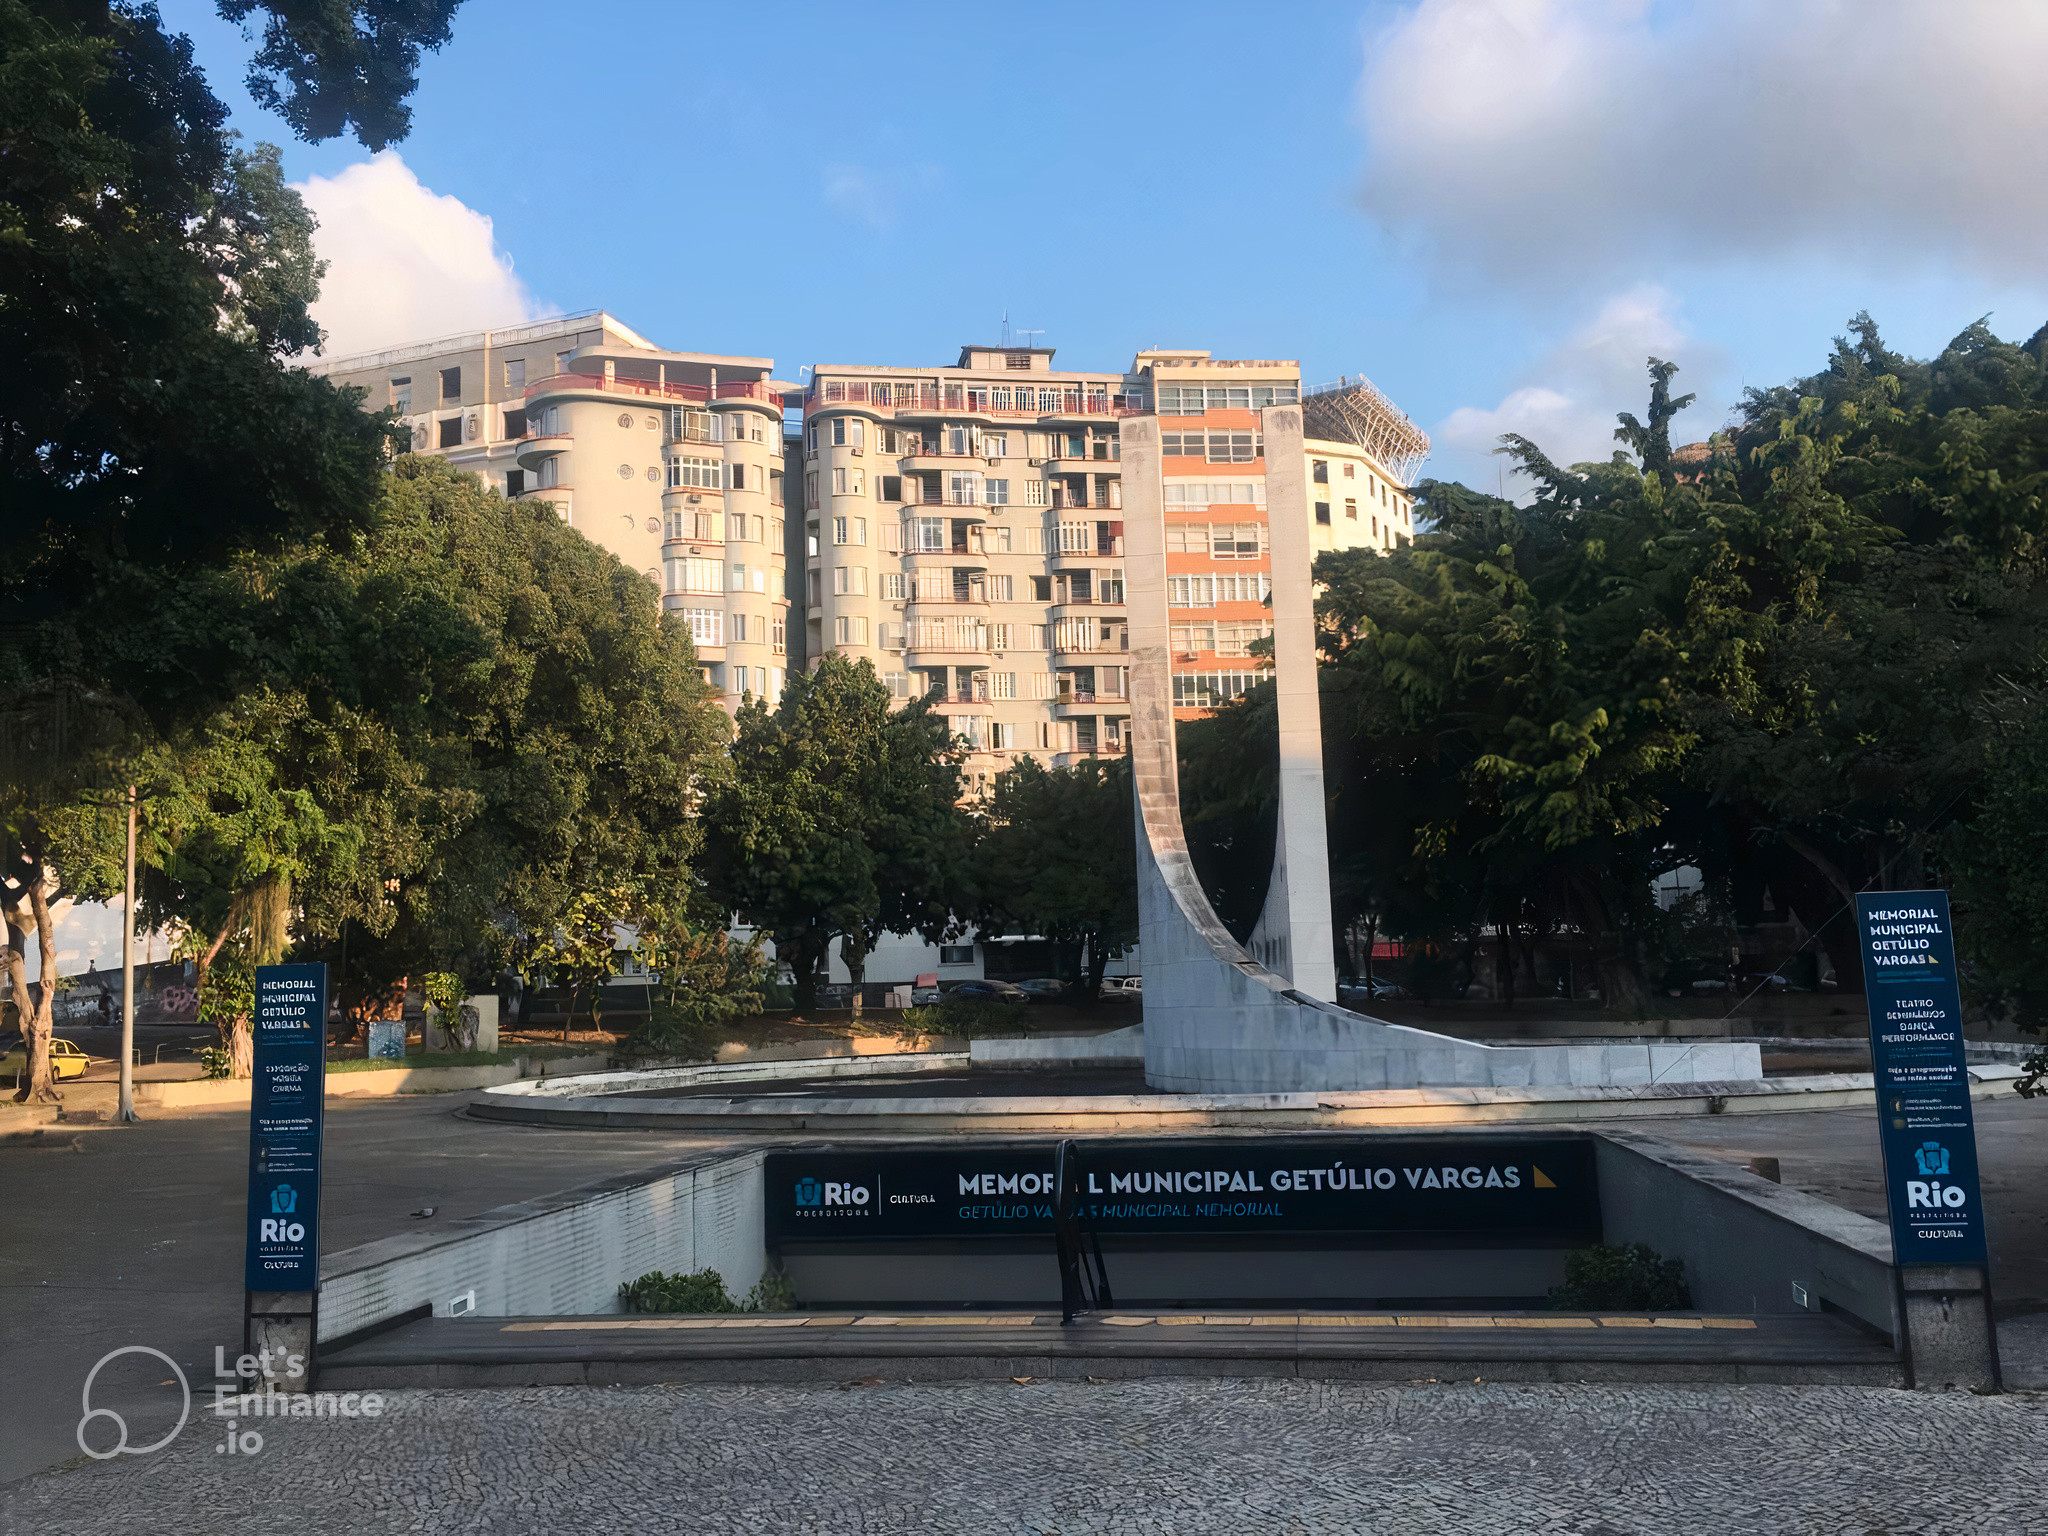 Memorial Municipal Getúlio Vargas 2